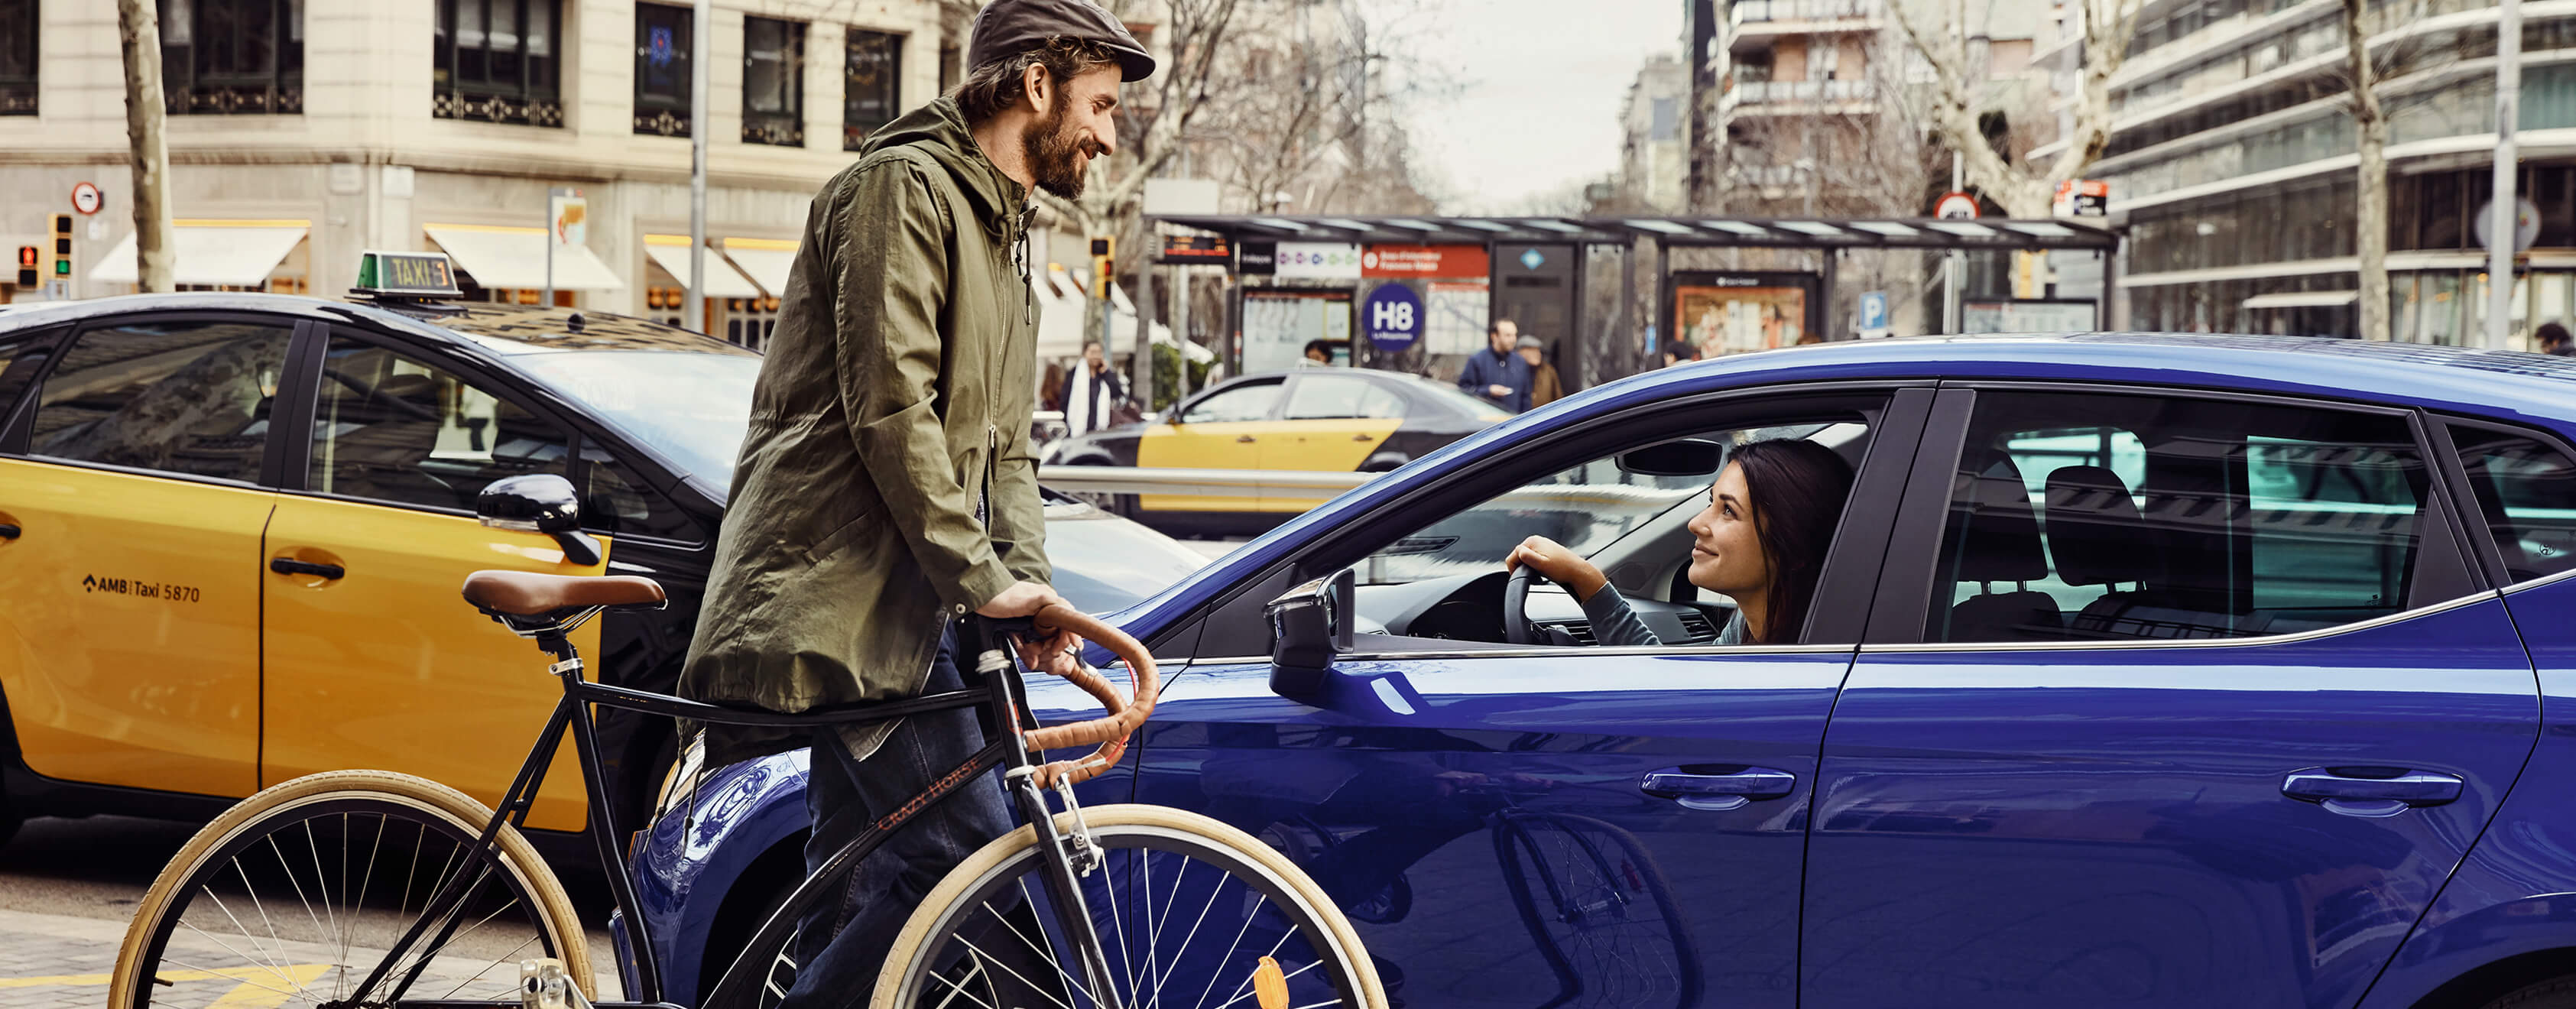 SEAT neuer Service, Wartung und Versicherung – Mann auf Fahrrad vor einem SEAT